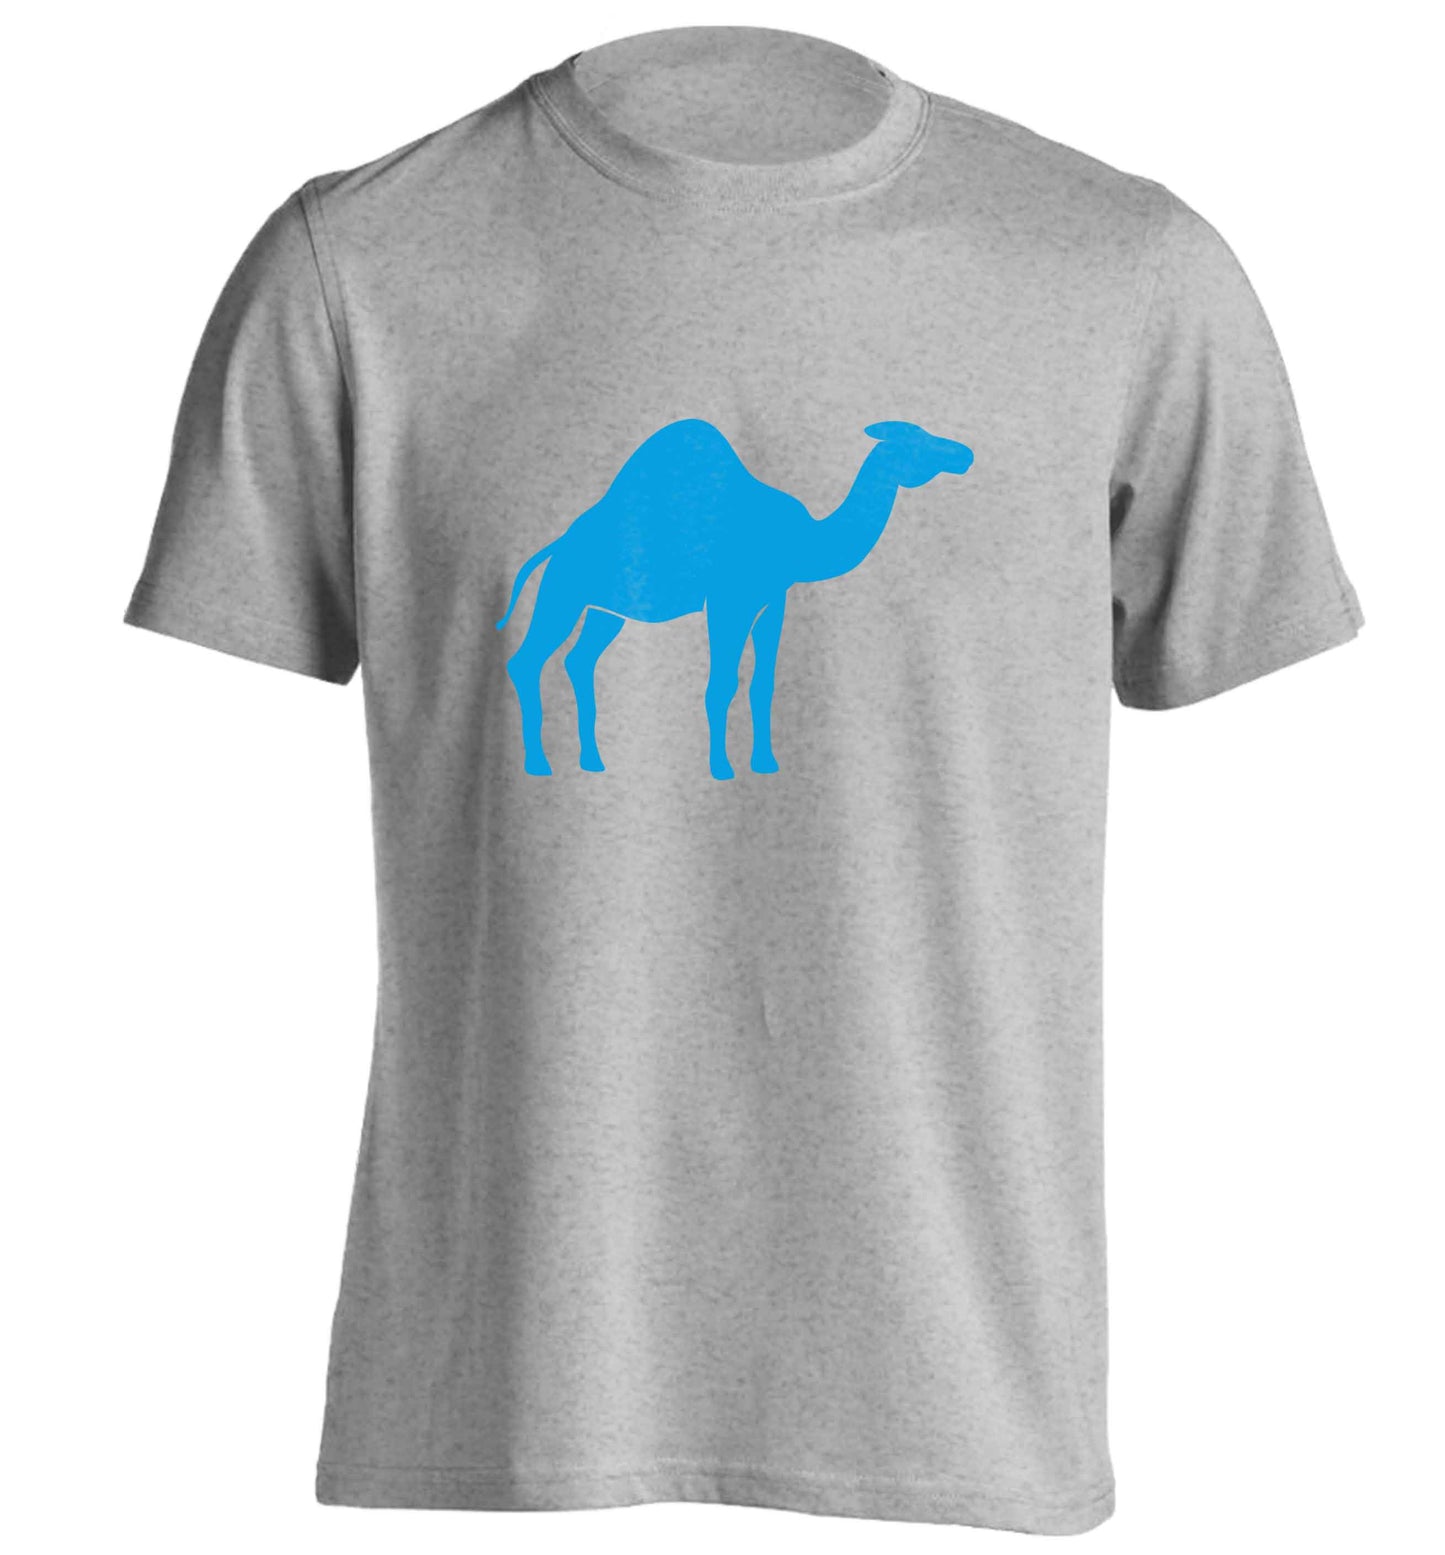 Blue camel adults unisex grey Tshirt 2XL